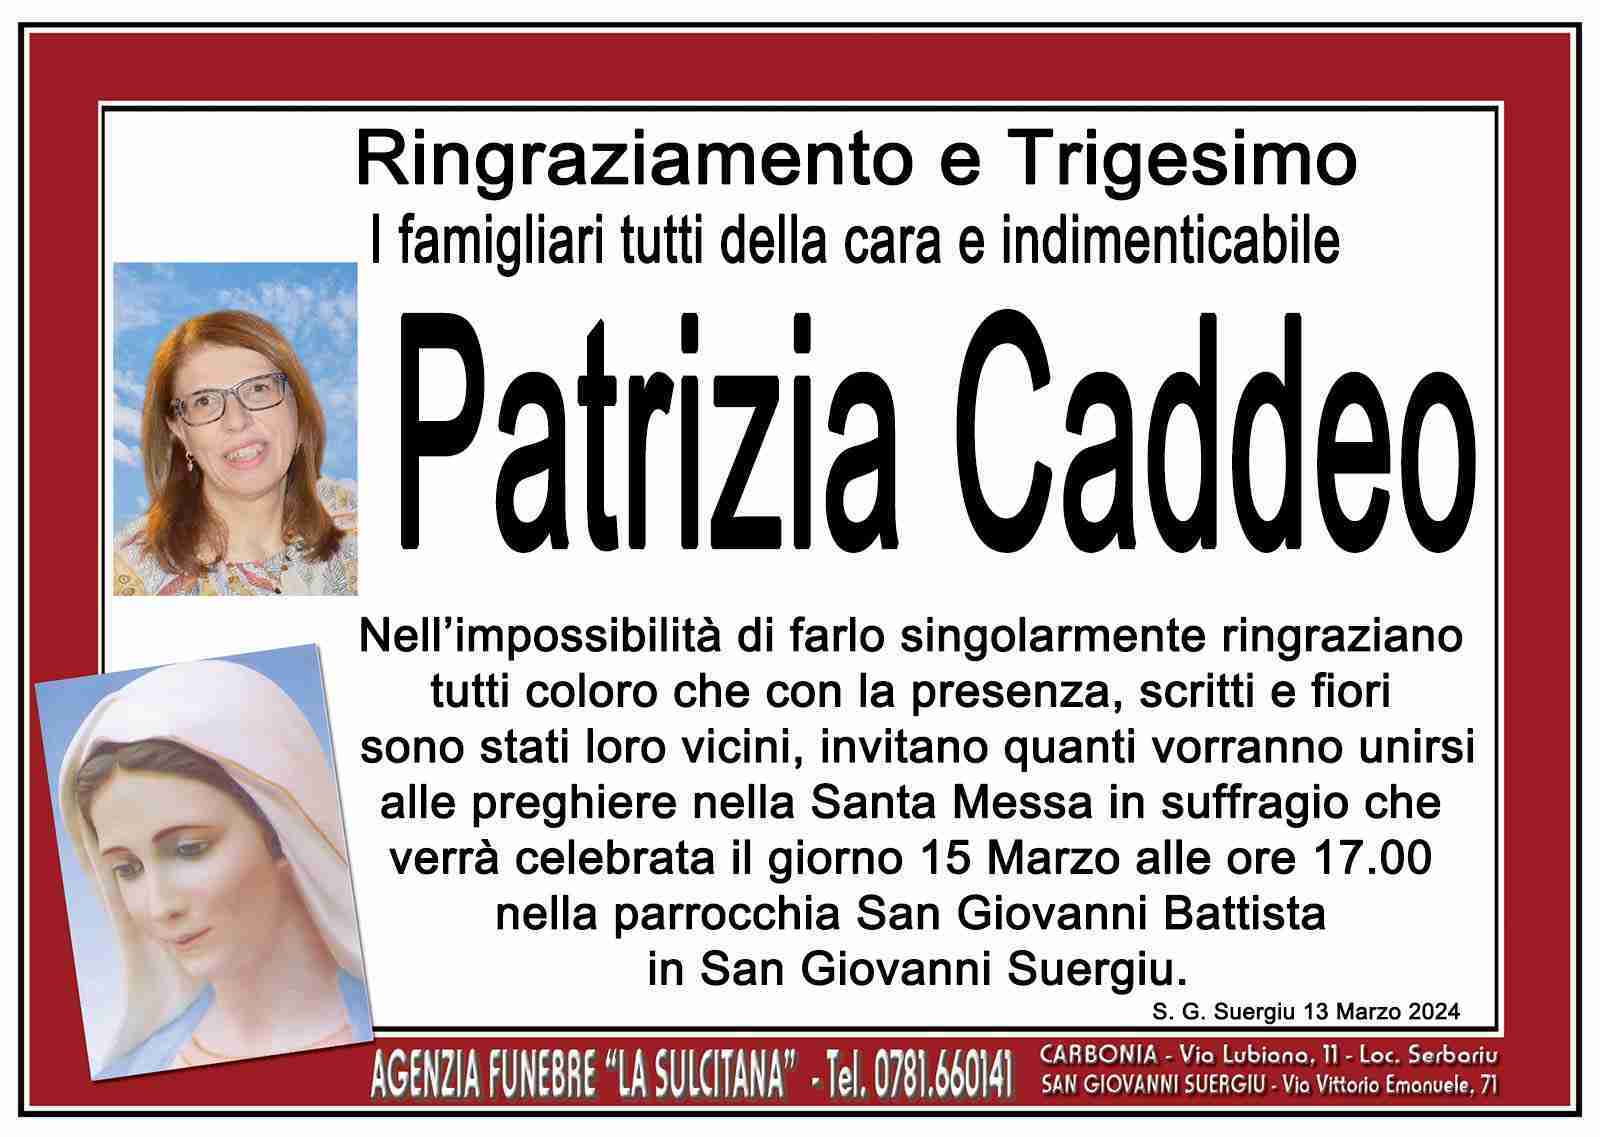 Patrizia Caddeo